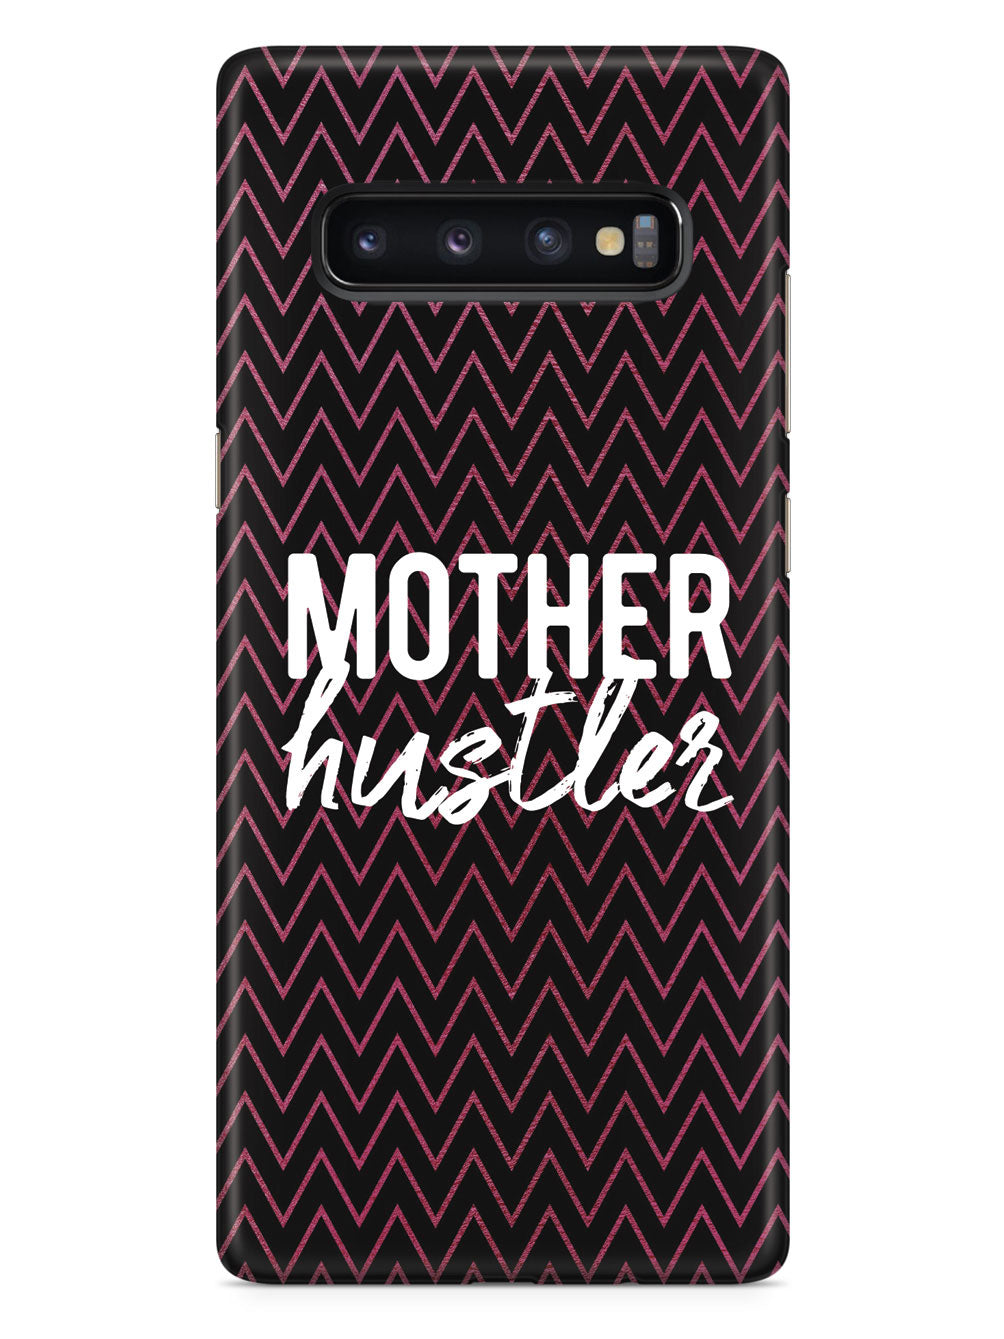 Mother Hustler - Black Case